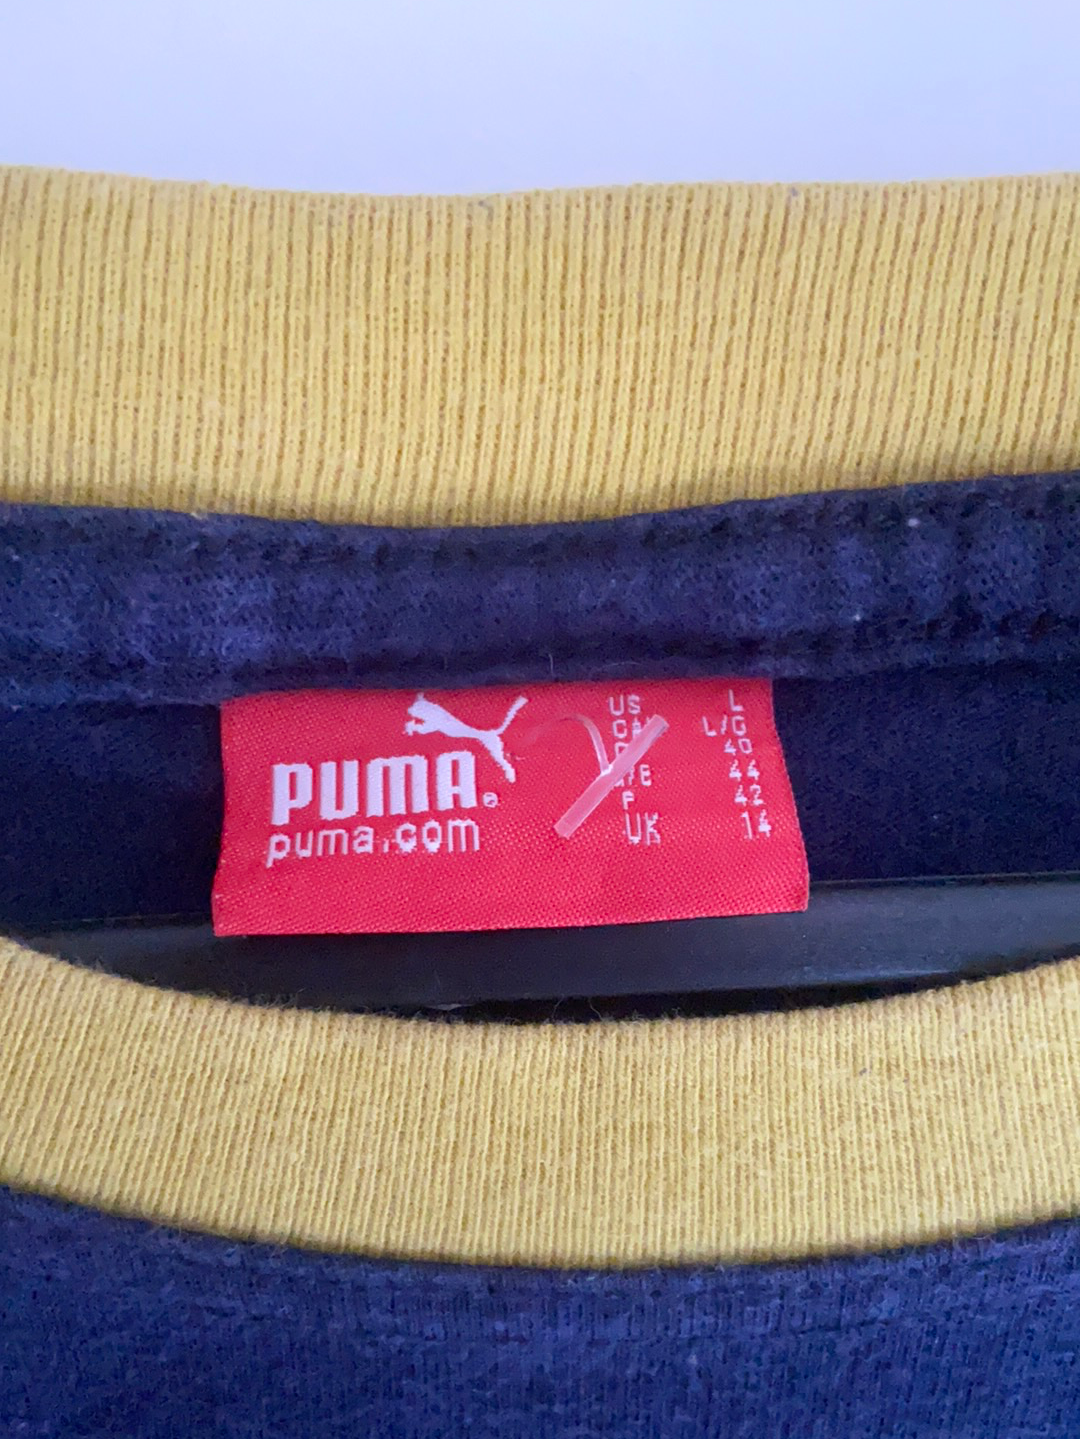 Puma Tee - Large